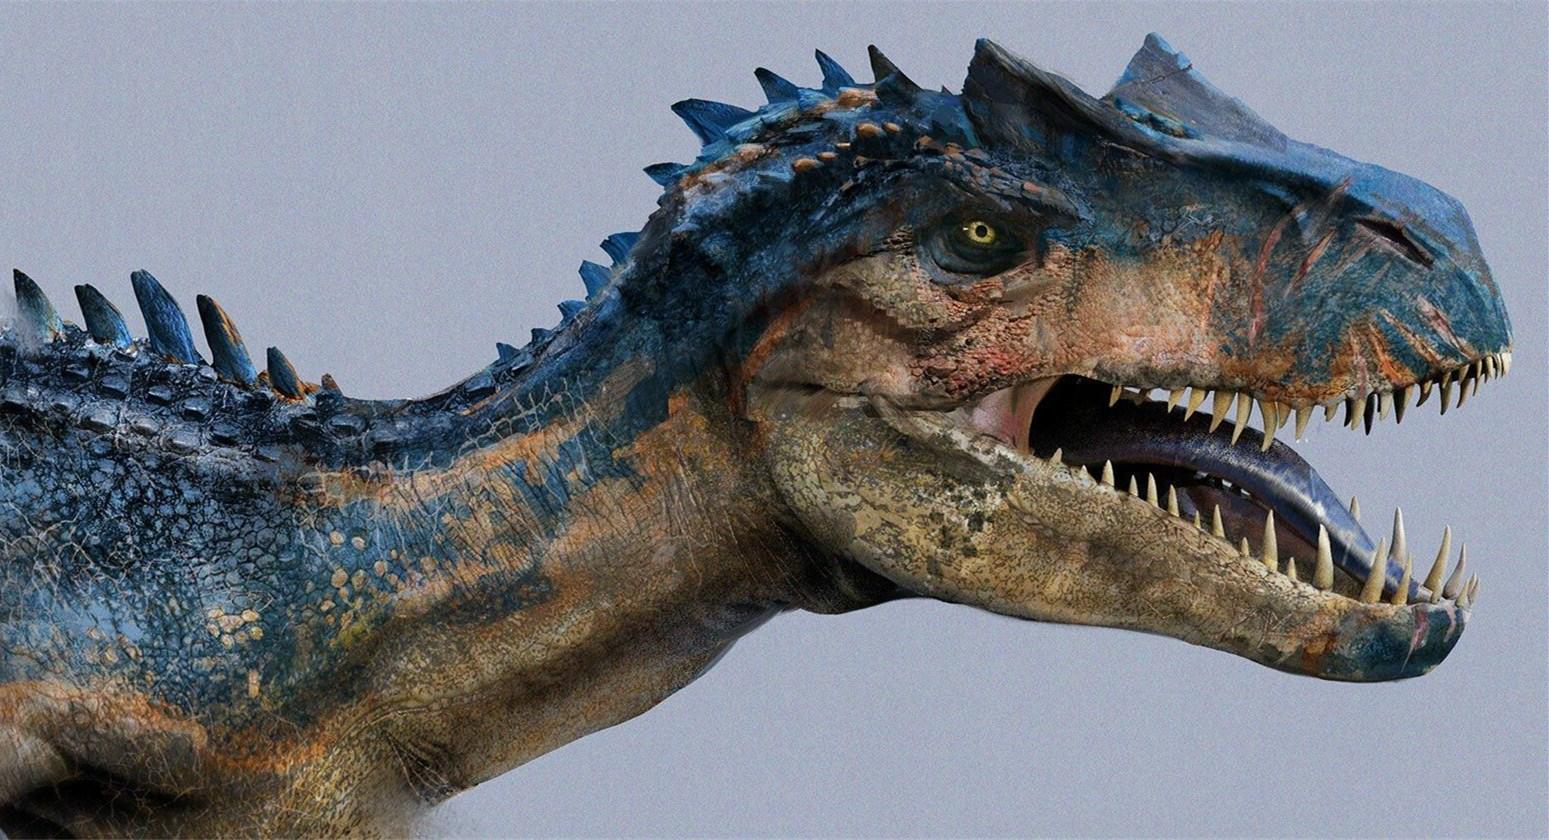 原创《侏罗纪世界》系列异特龙对比,霸王龙是假王,它才是侏罗纪霸主